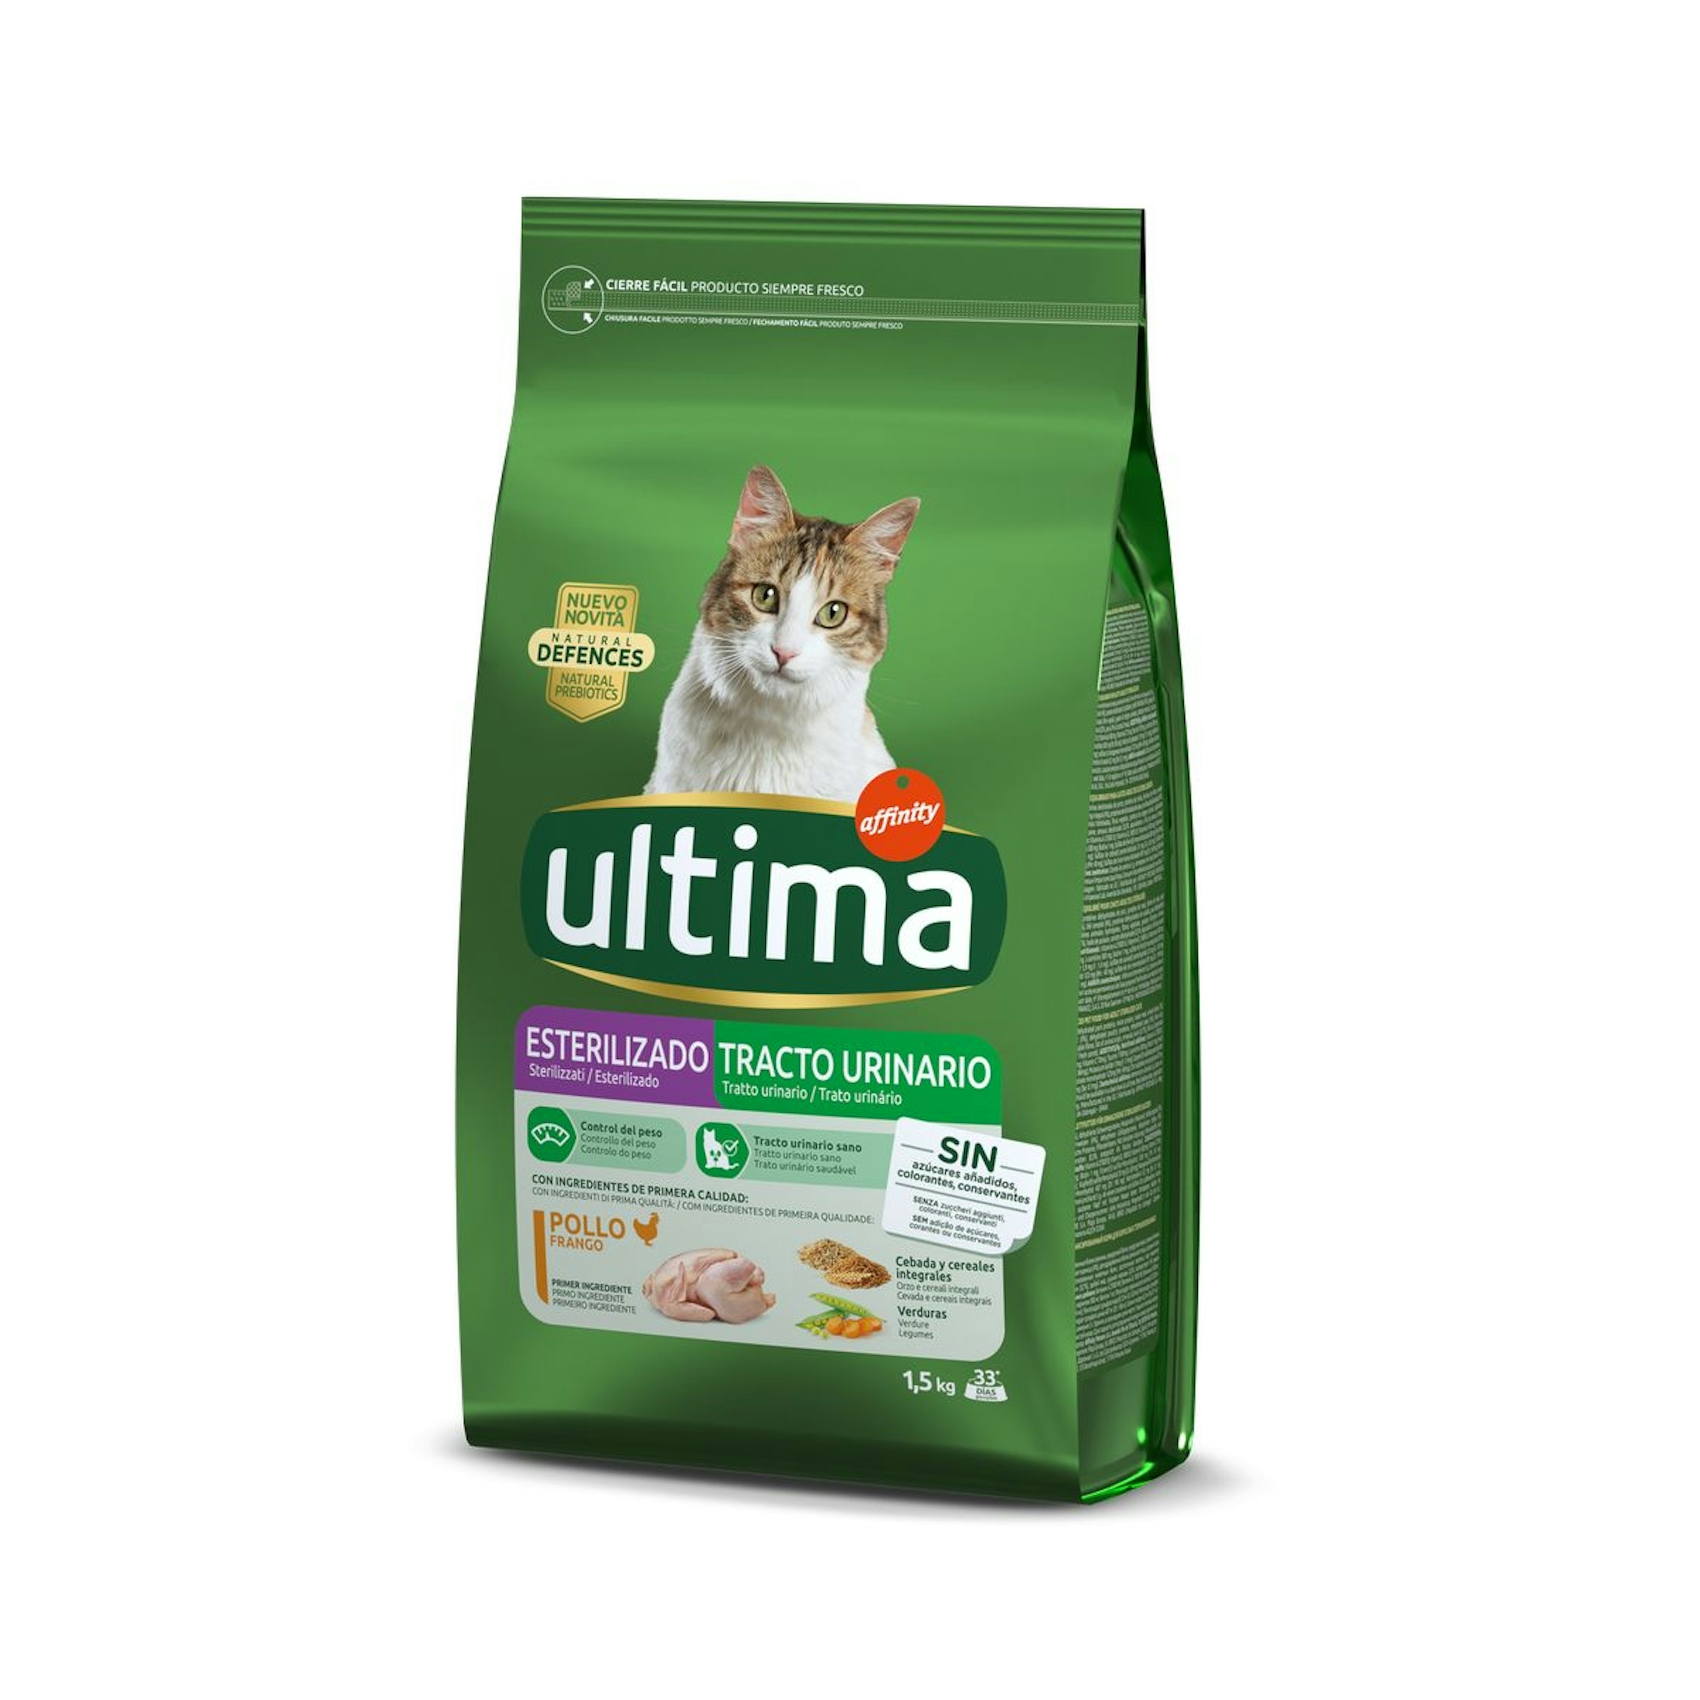 Alimento para gatos esterilizados y tracto urinario ULTIMA 1.5 kg